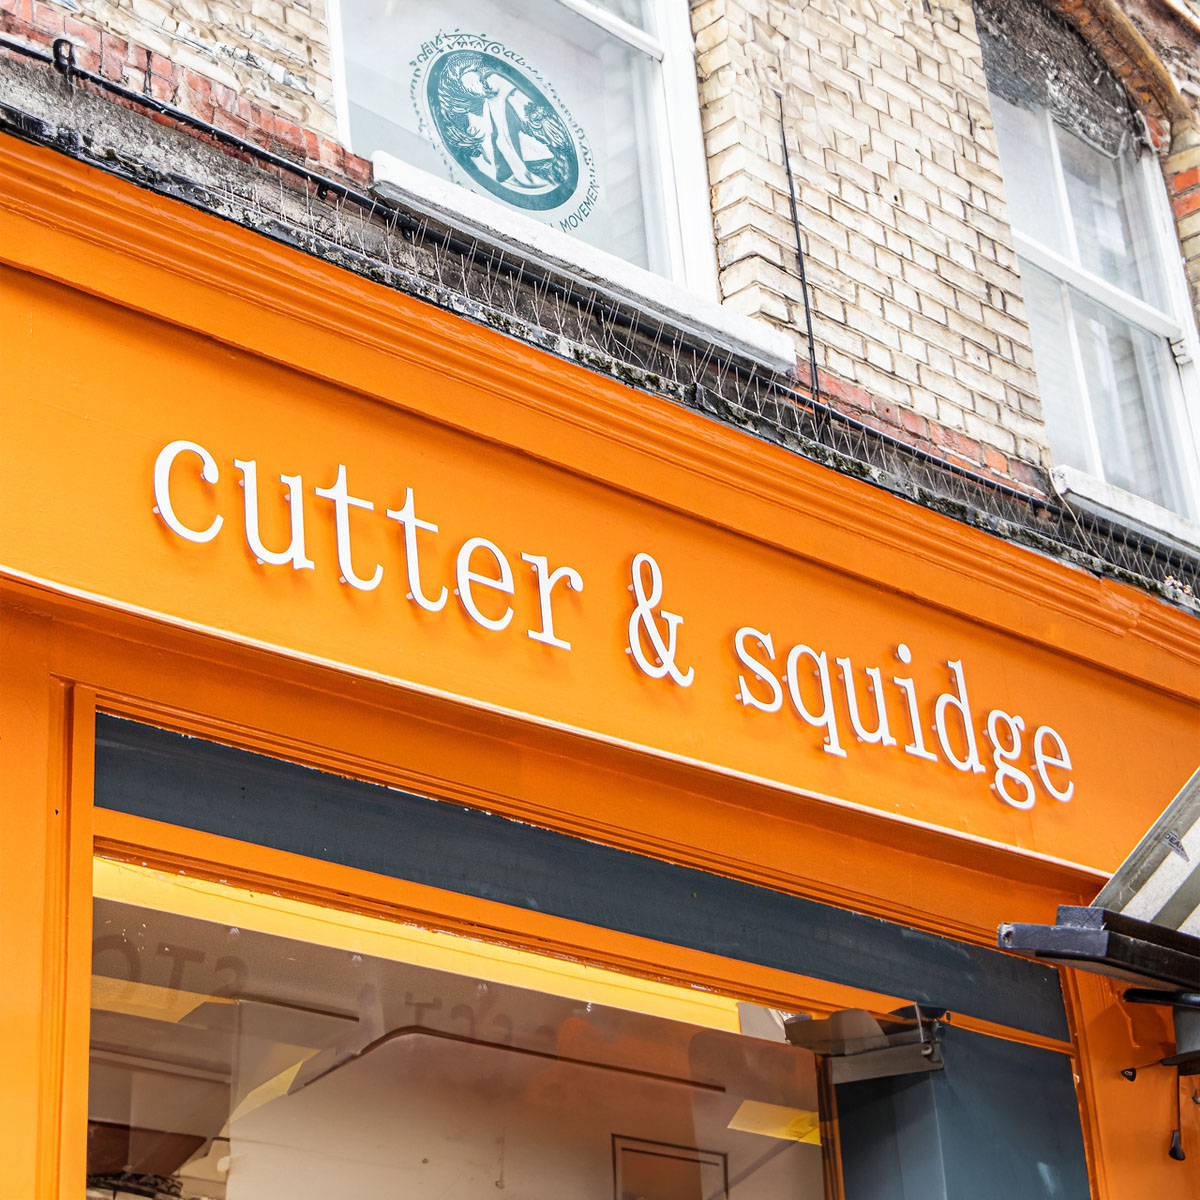 Cutter & Squidge